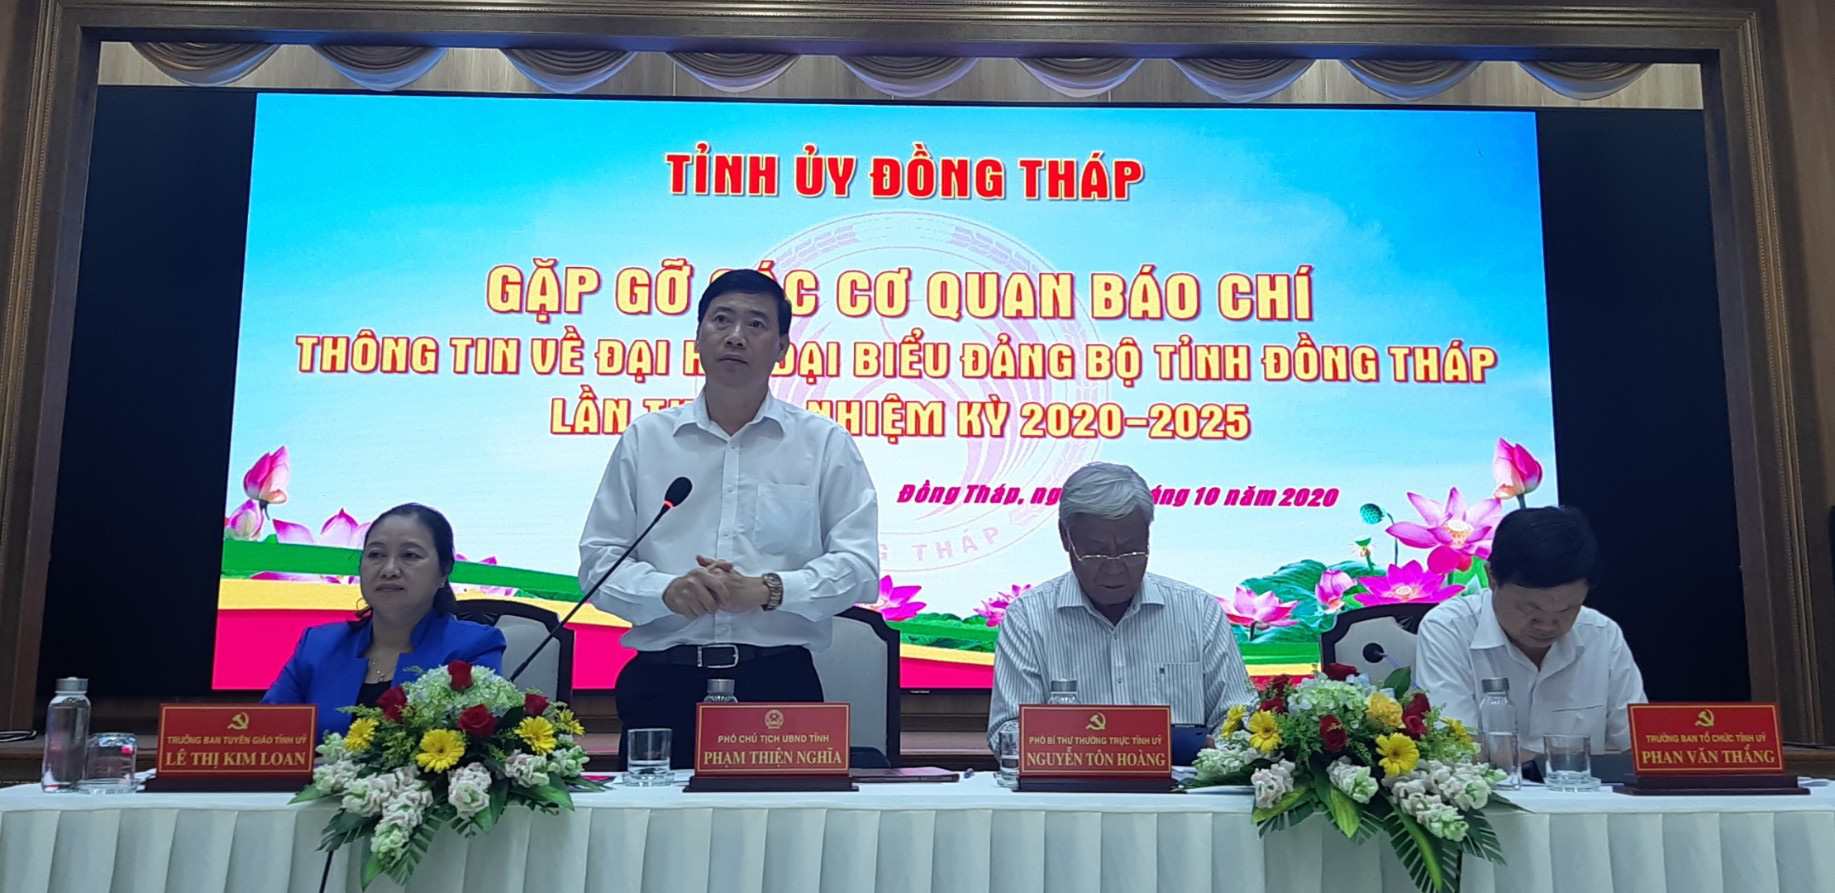 Ông Lê Minh Hoan vẫn lãnh đạo Đại hội Đảng bộ tỉnh Đồng Tháp - Ảnh 3.